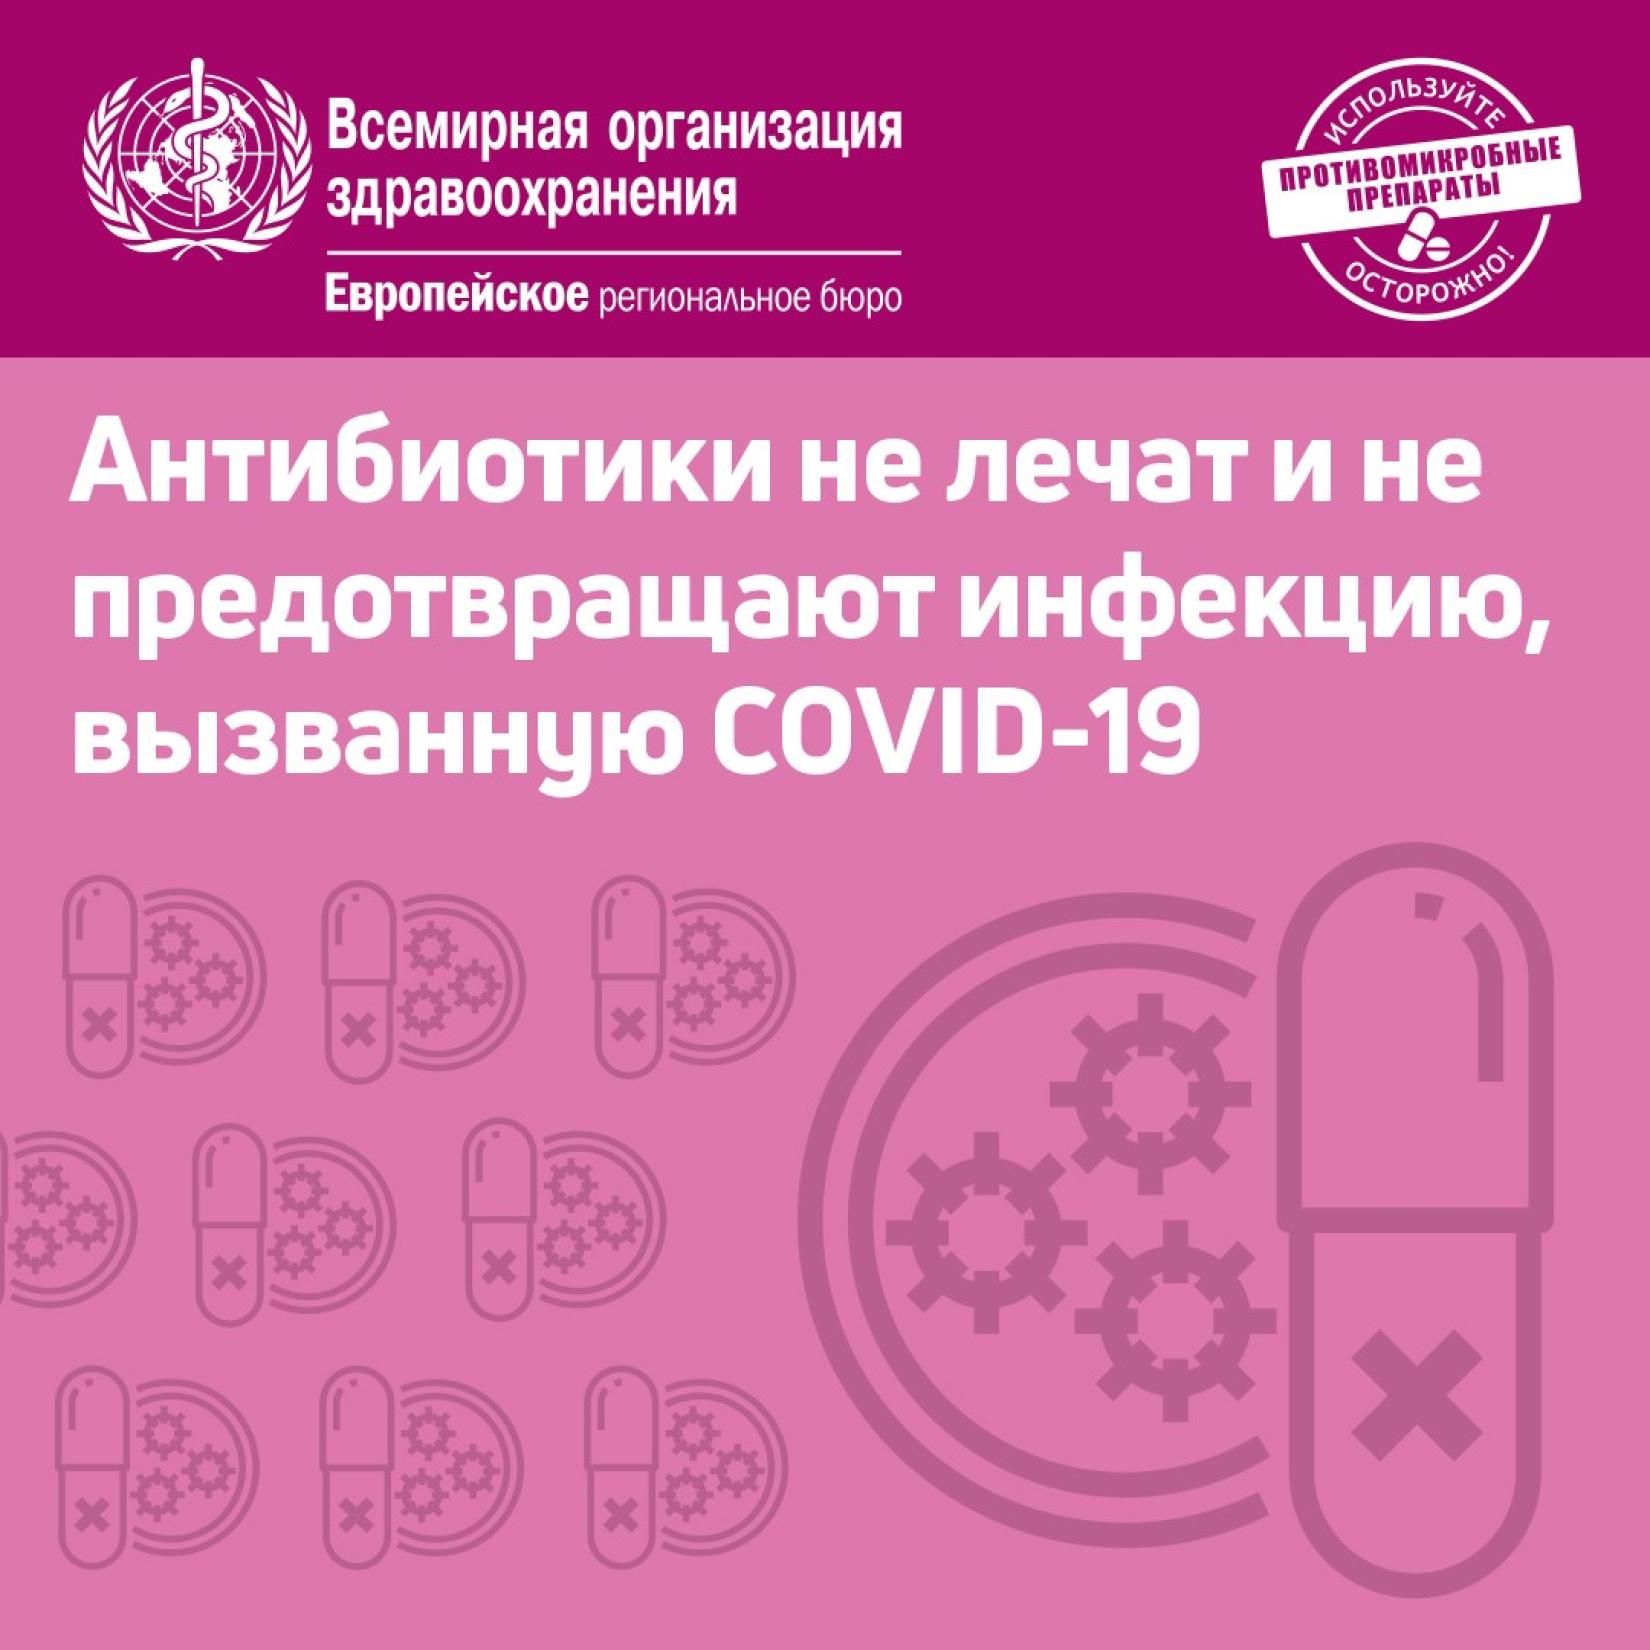 Антибиотики не лечат COVID-19